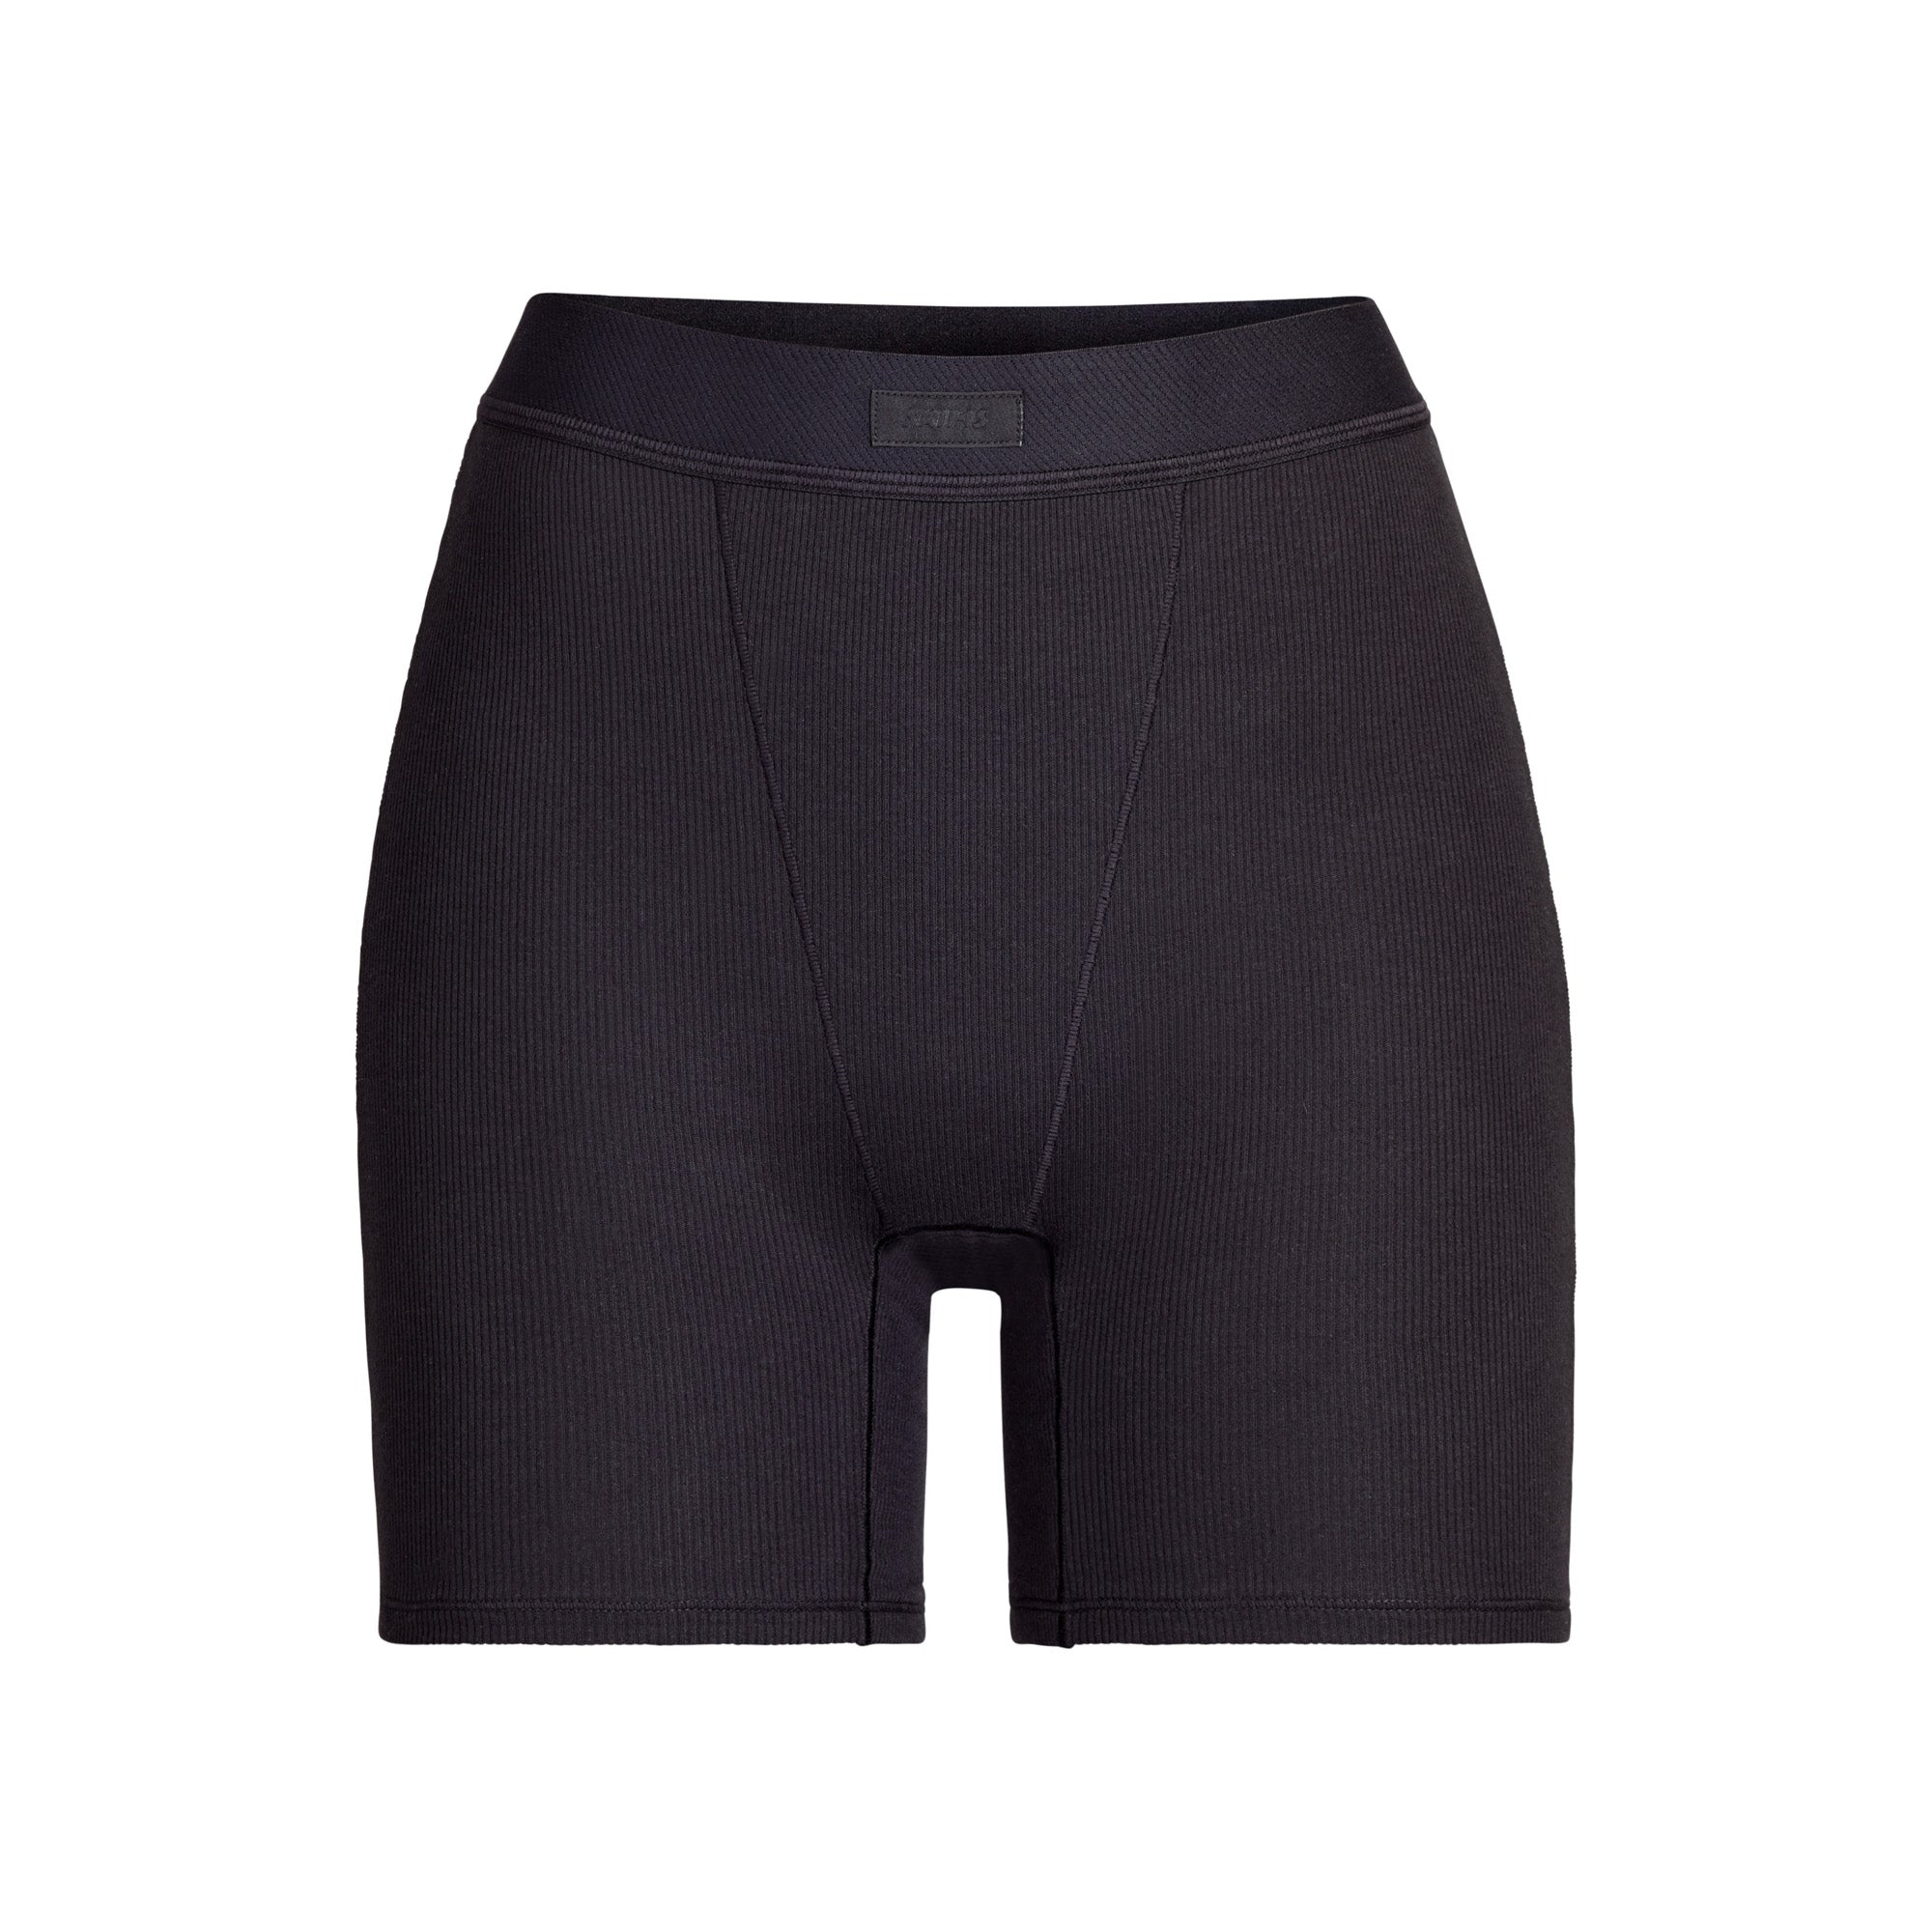 Louis Vuitton designer spandex women underwear/boy shorts